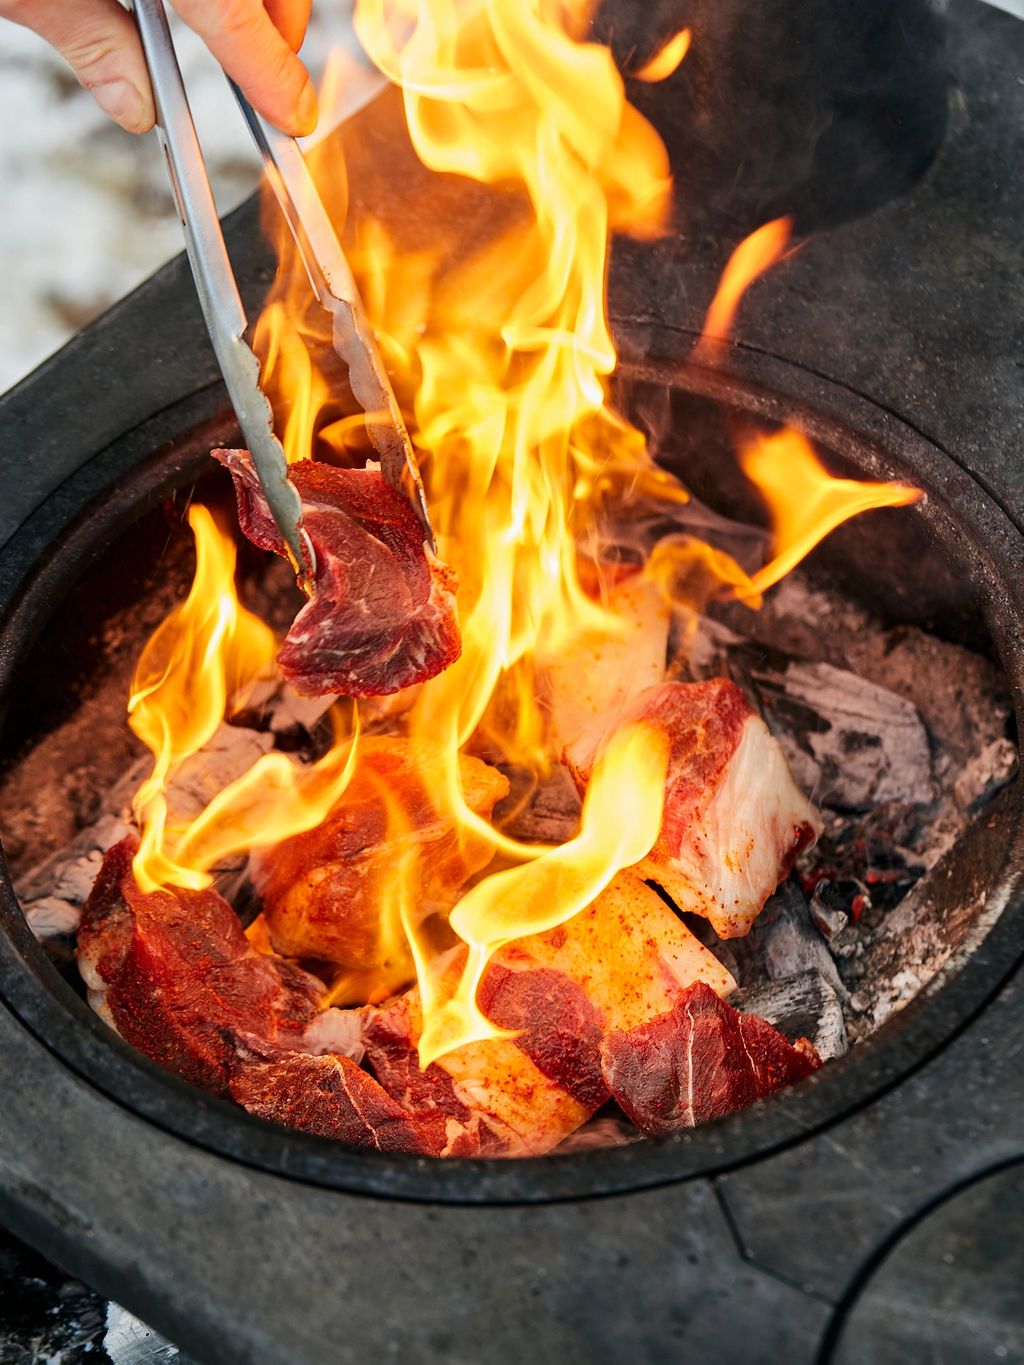 Kjøttet stekes rett på glørne. Det vil komme flammer og røyk, så sørg for å ha en lang klype – det blir varmt!